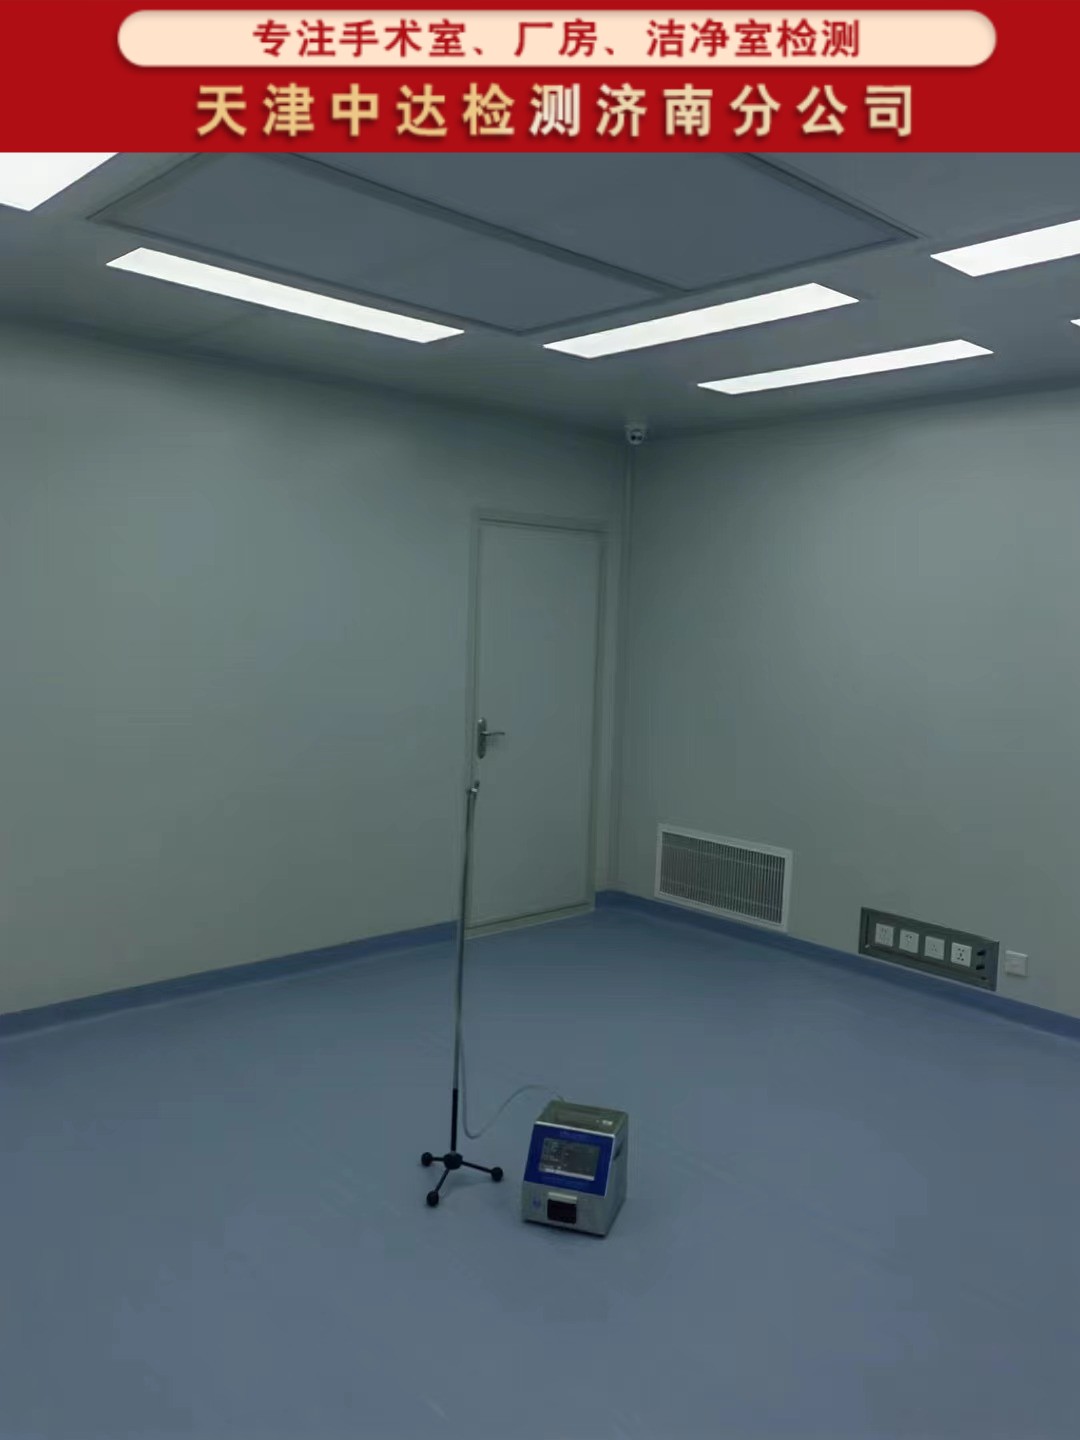 日照东港区层流净化手术室洁净室检测内容和方法-天津中达检测济南分公司